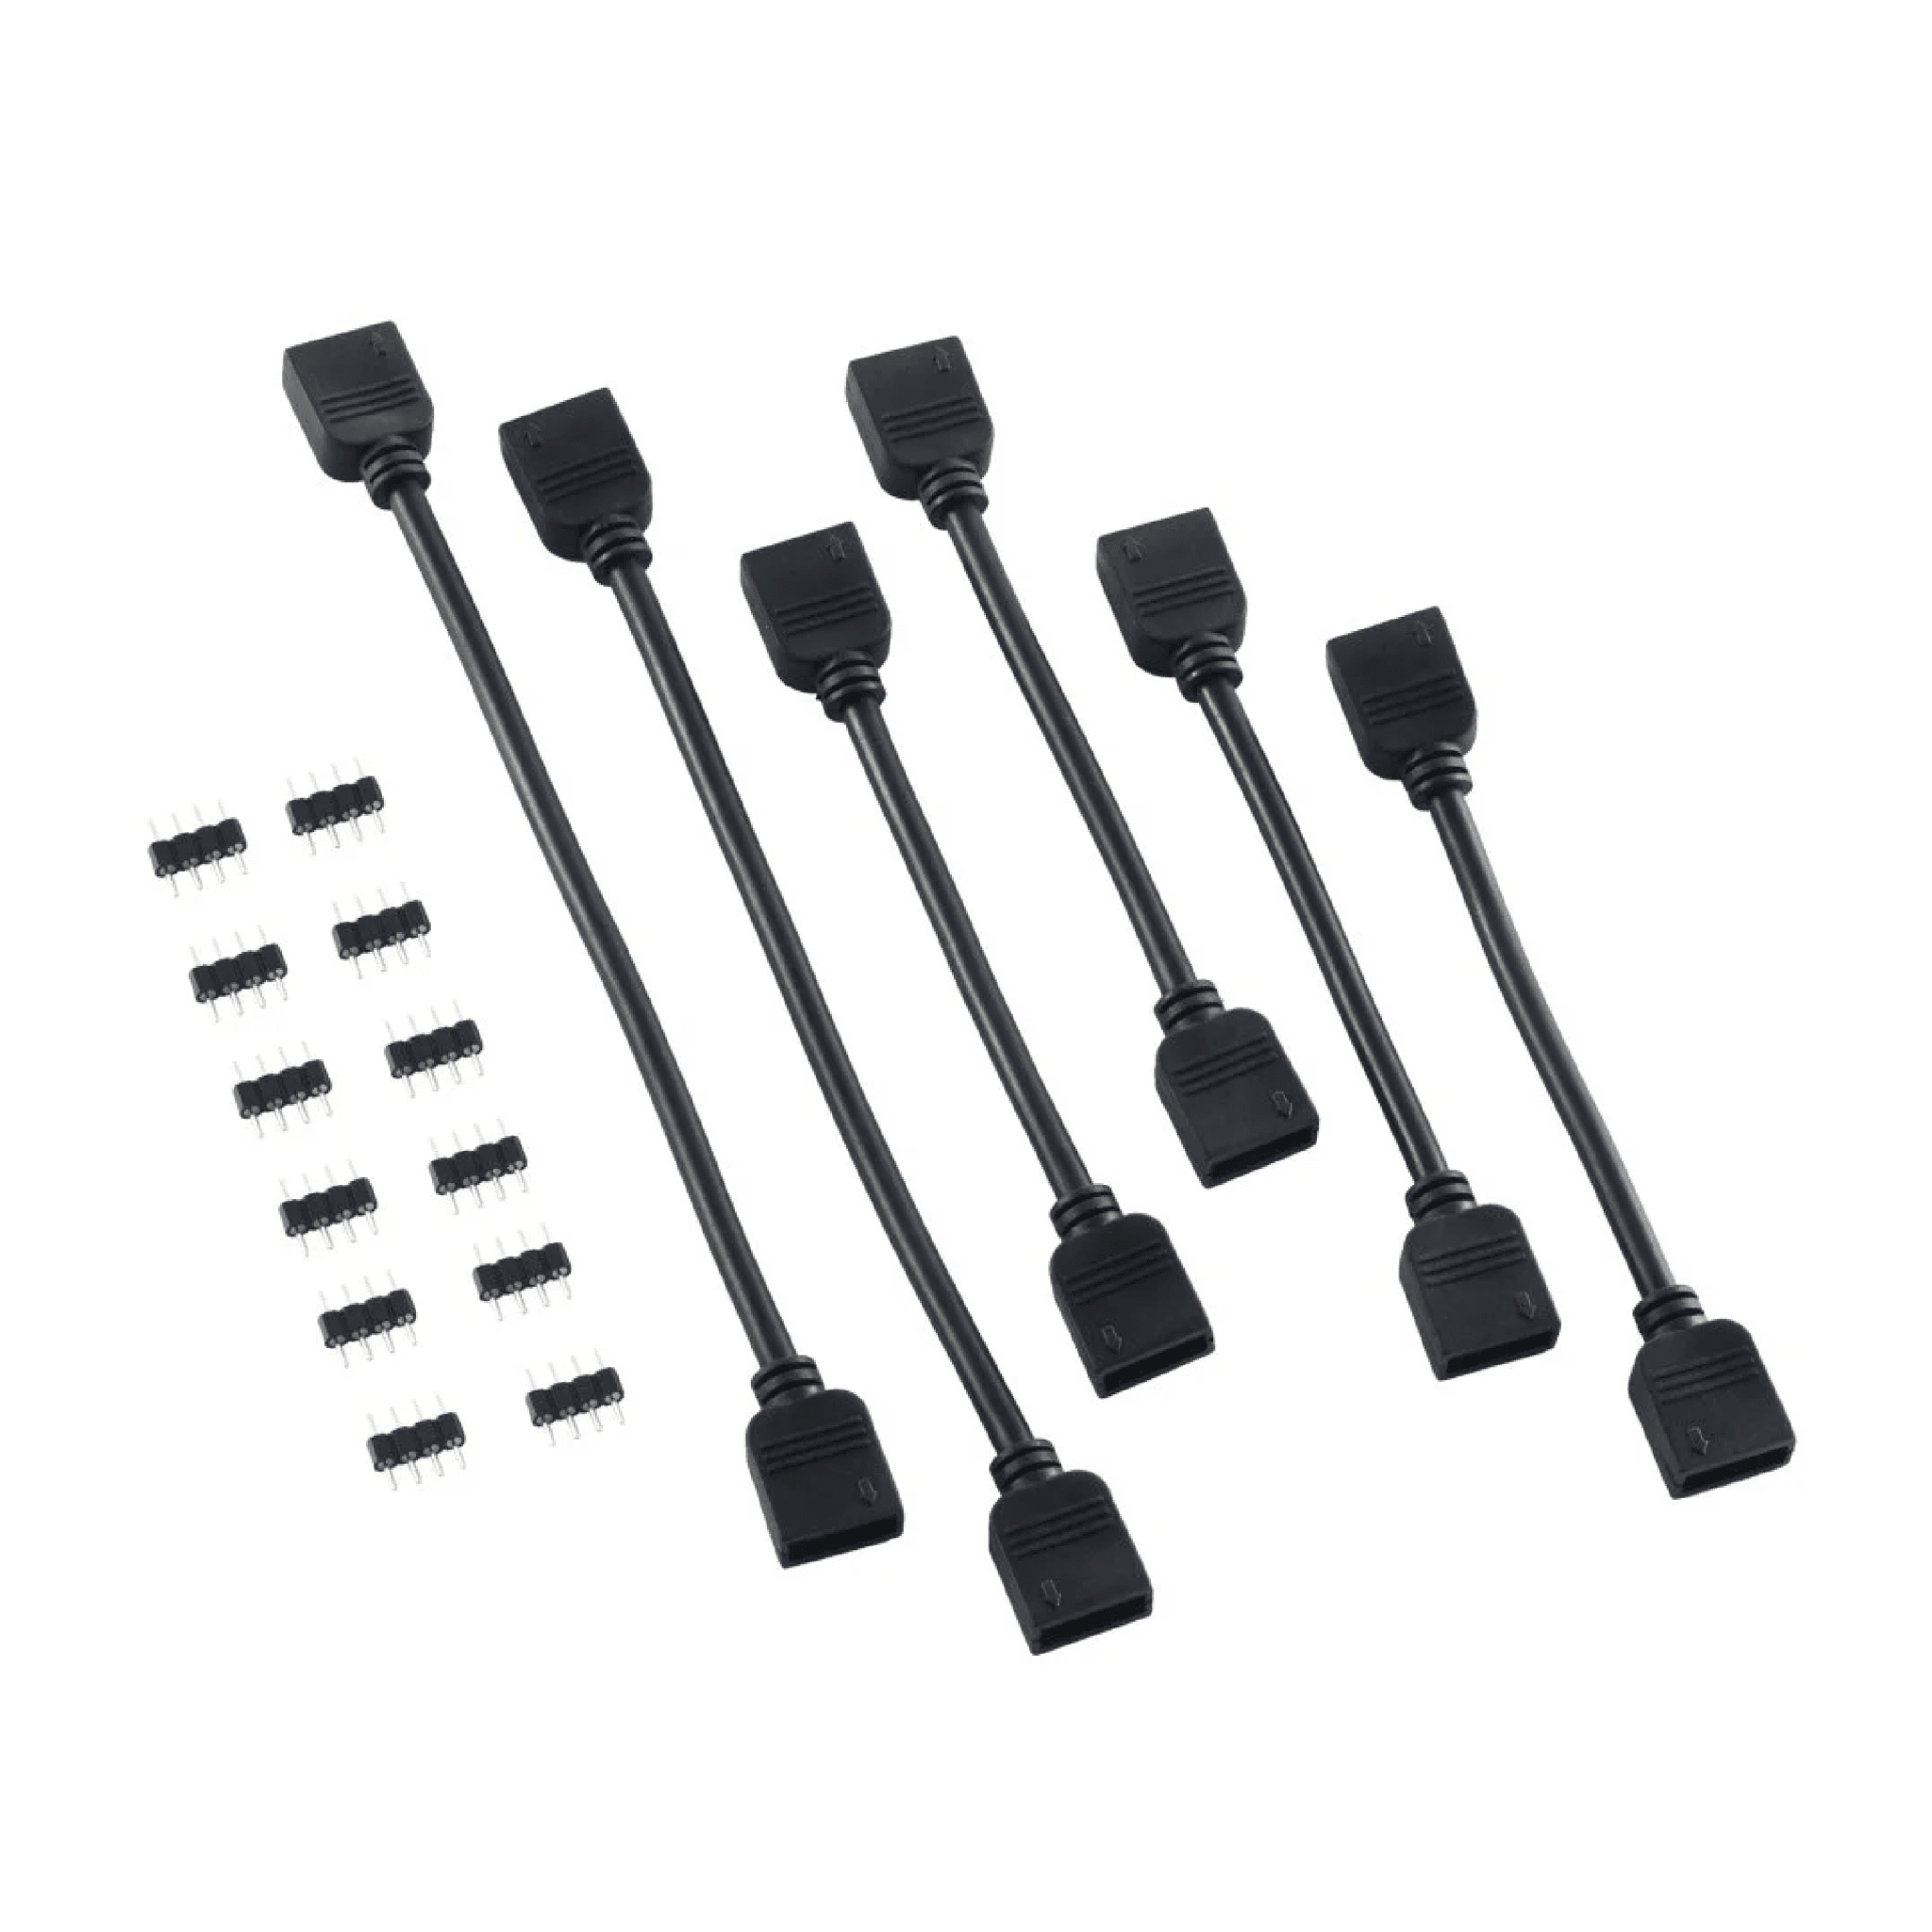 CableMod 4-Pin LED Extension Cable Kit - Black - Store 974 | ستور ٩٧٤